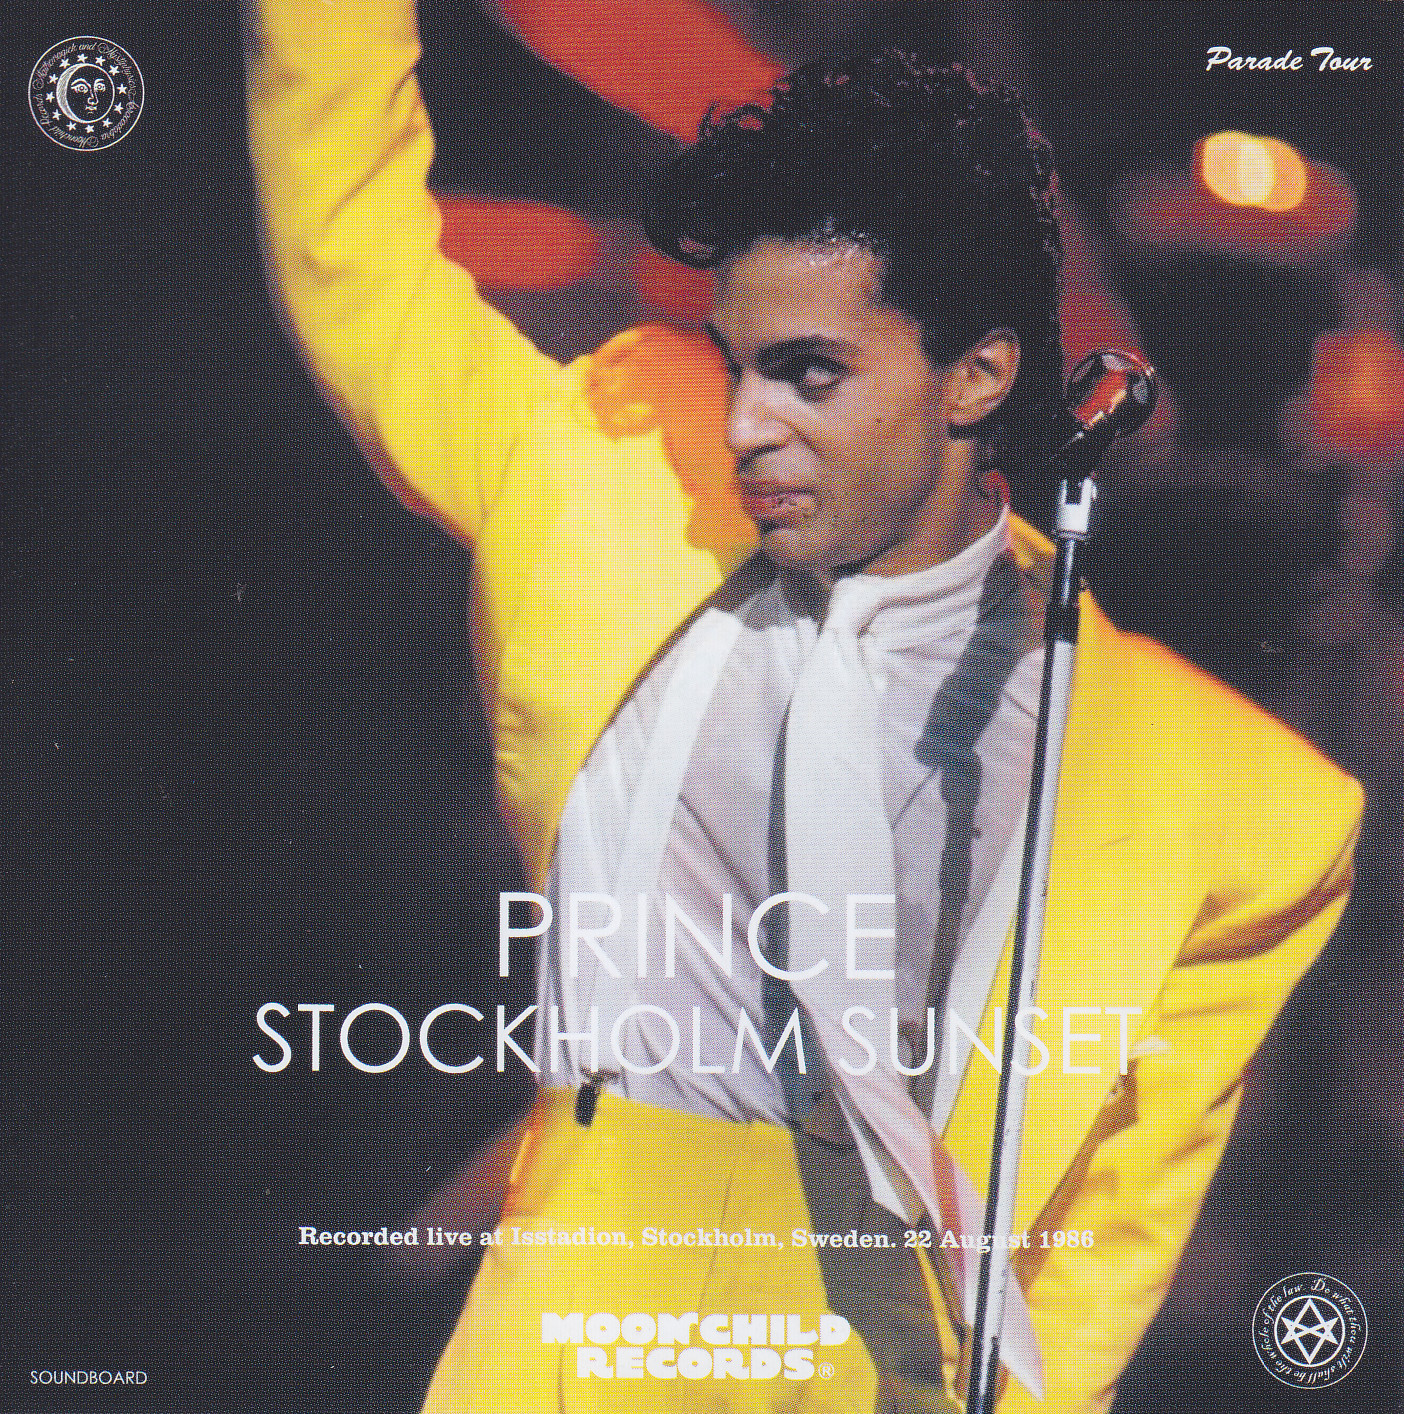 Prince / Stockholm Sunset Parade Tour / 2CD – GiGinJapan